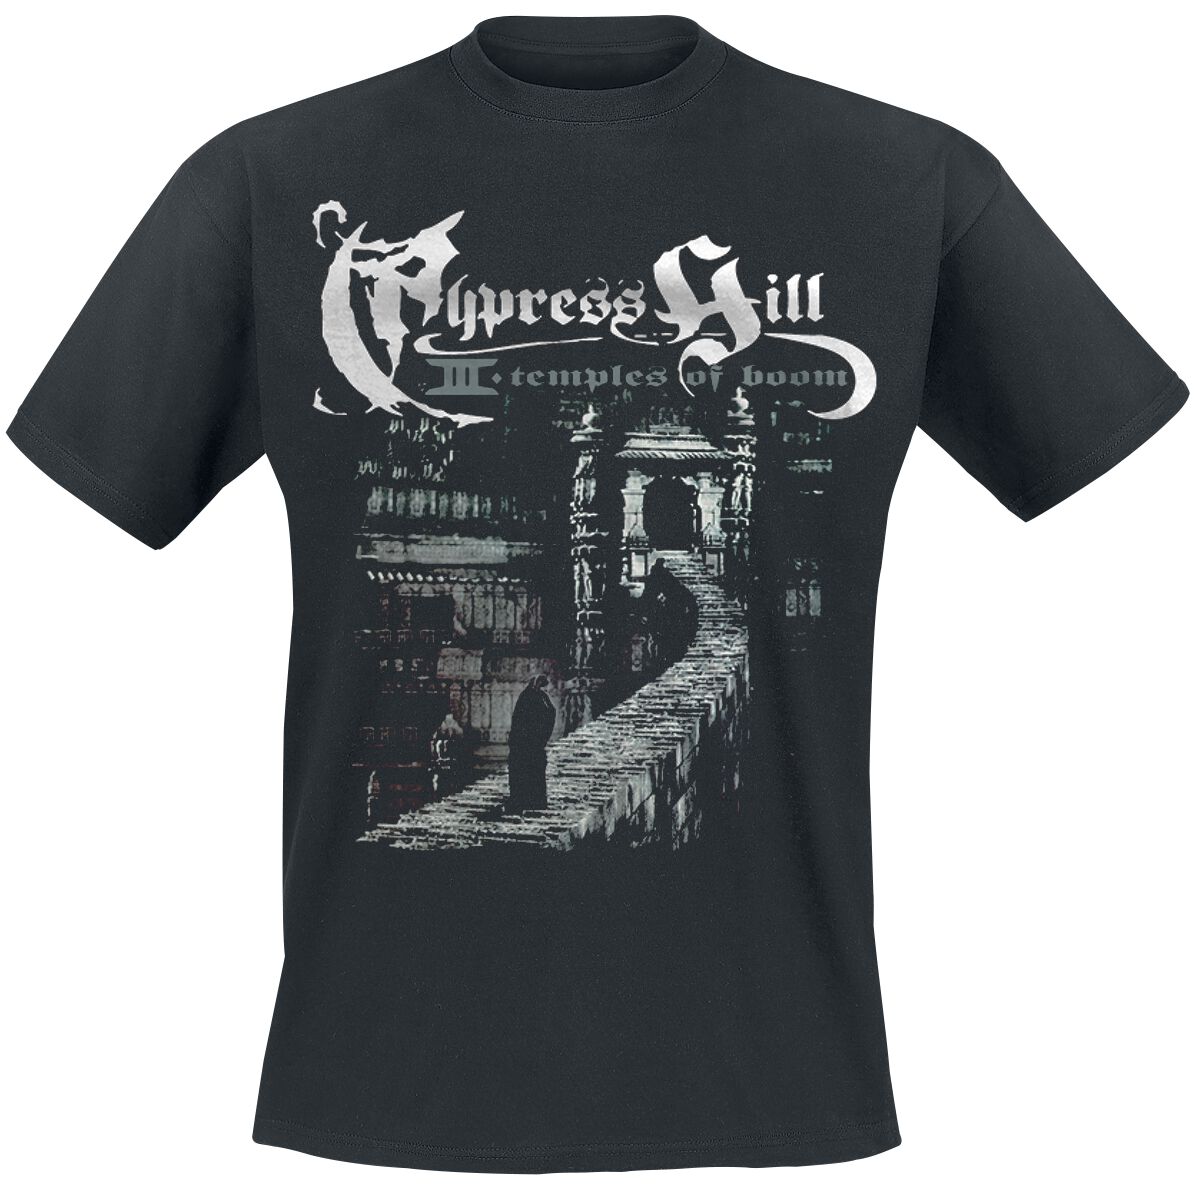 Cypress Hill T-Shirt - Temple Of Boom - S bis 5XL - für Männer - Größe 3XL - schwarz  - Lizenziertes Merchandise!